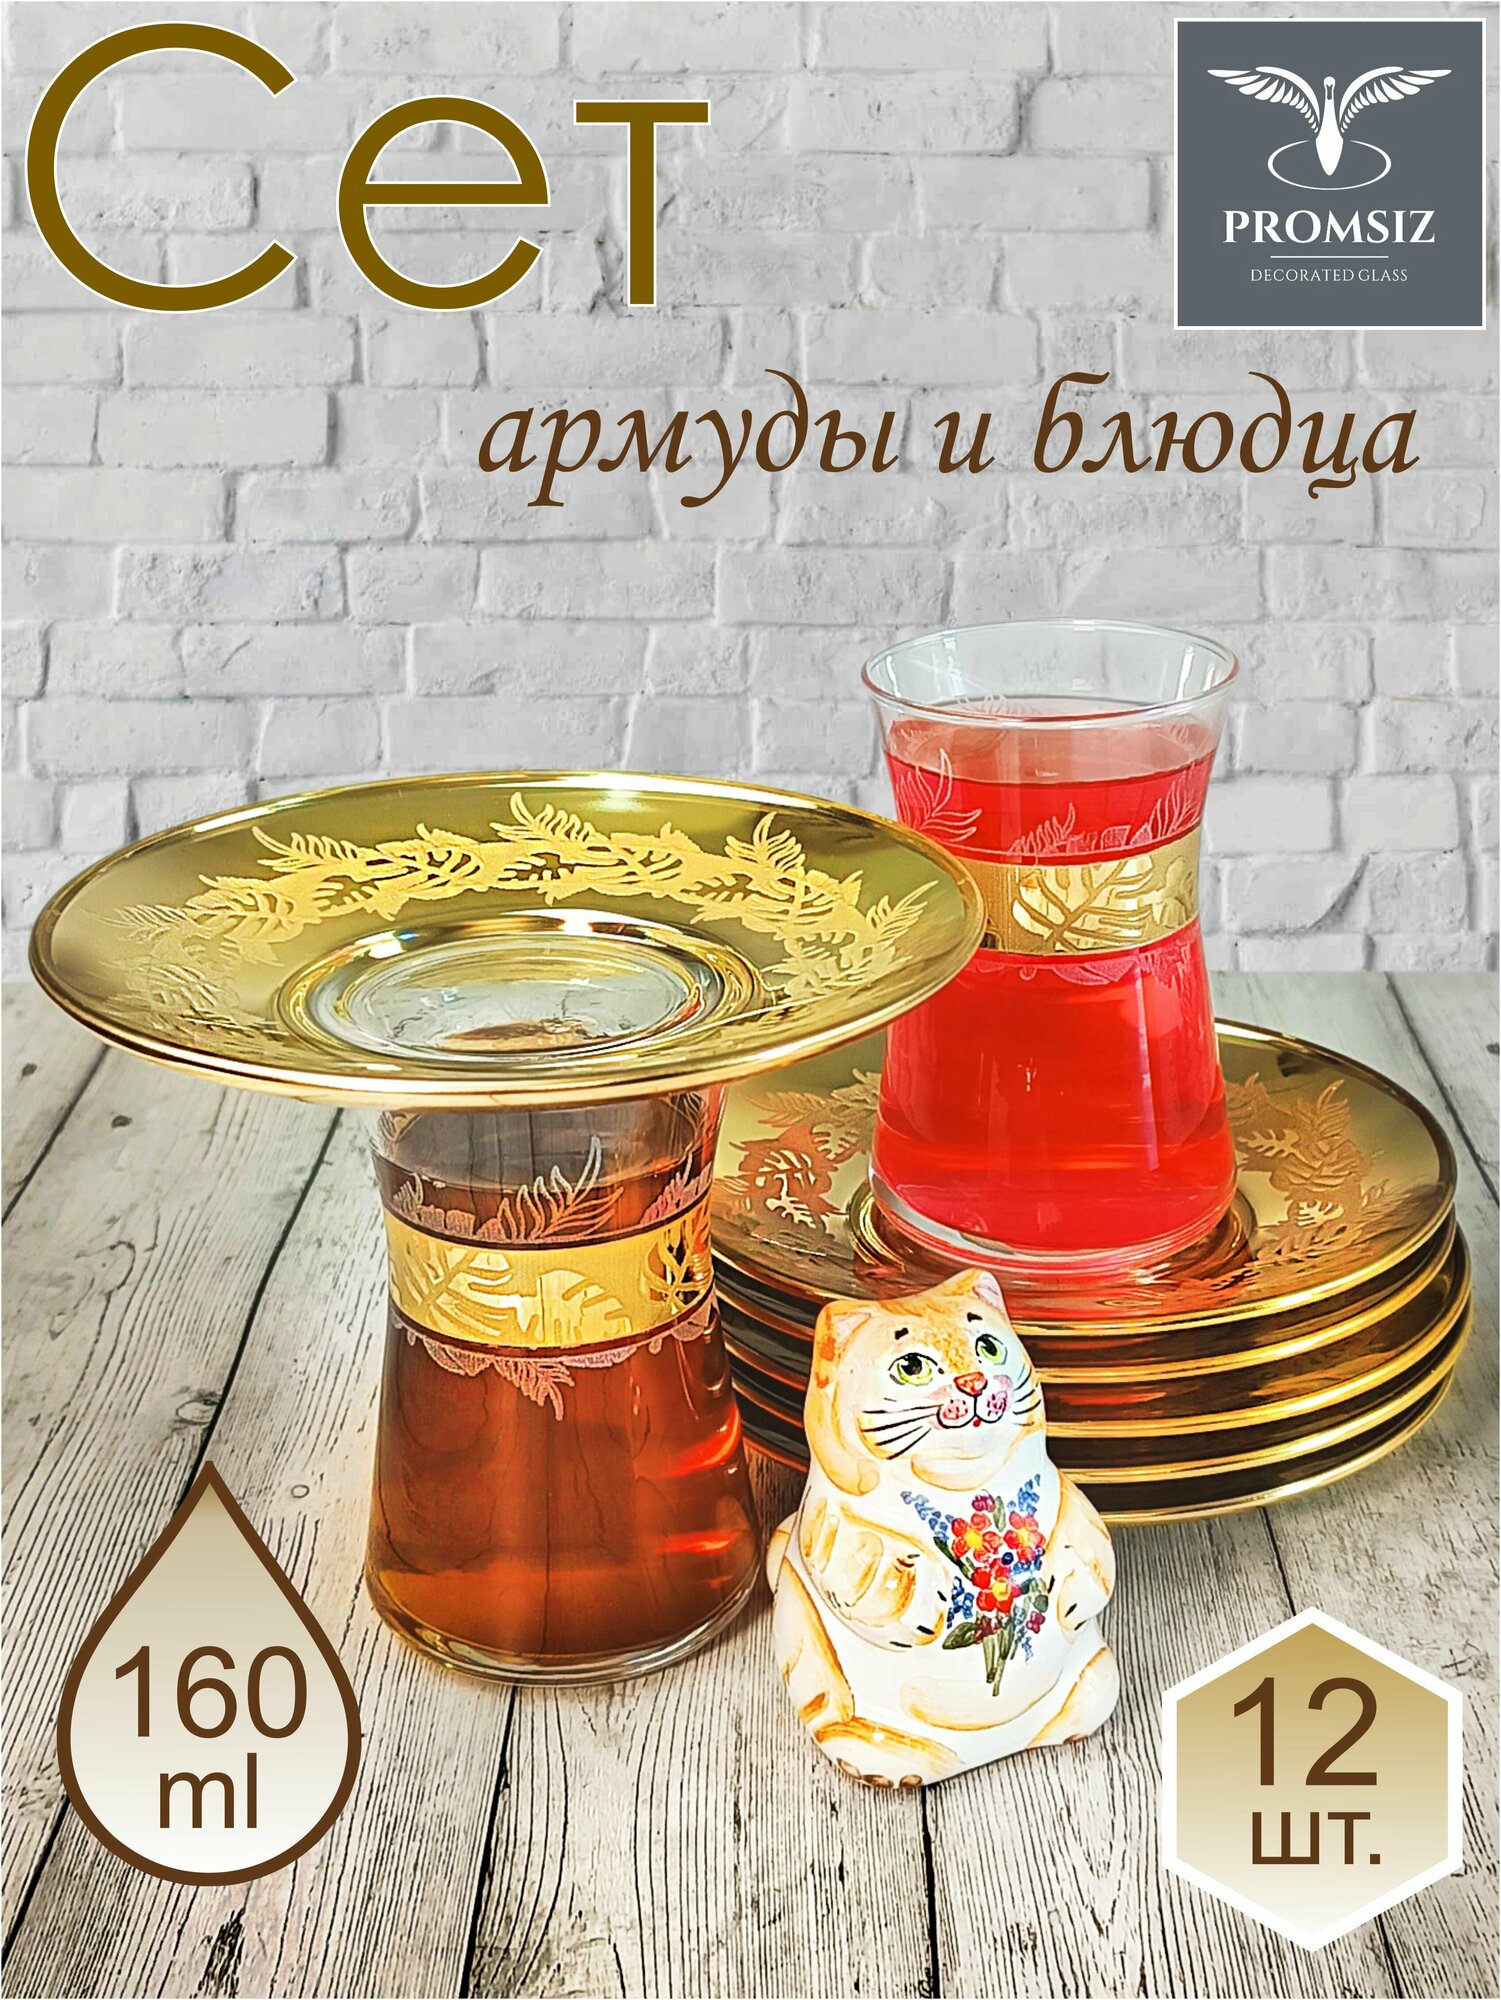 Подарочный набор турецких стаканов с блюдцами для чая / кофе, Армуды с алмазной гравировкой PROMSIZ ирбис / 12 шт.